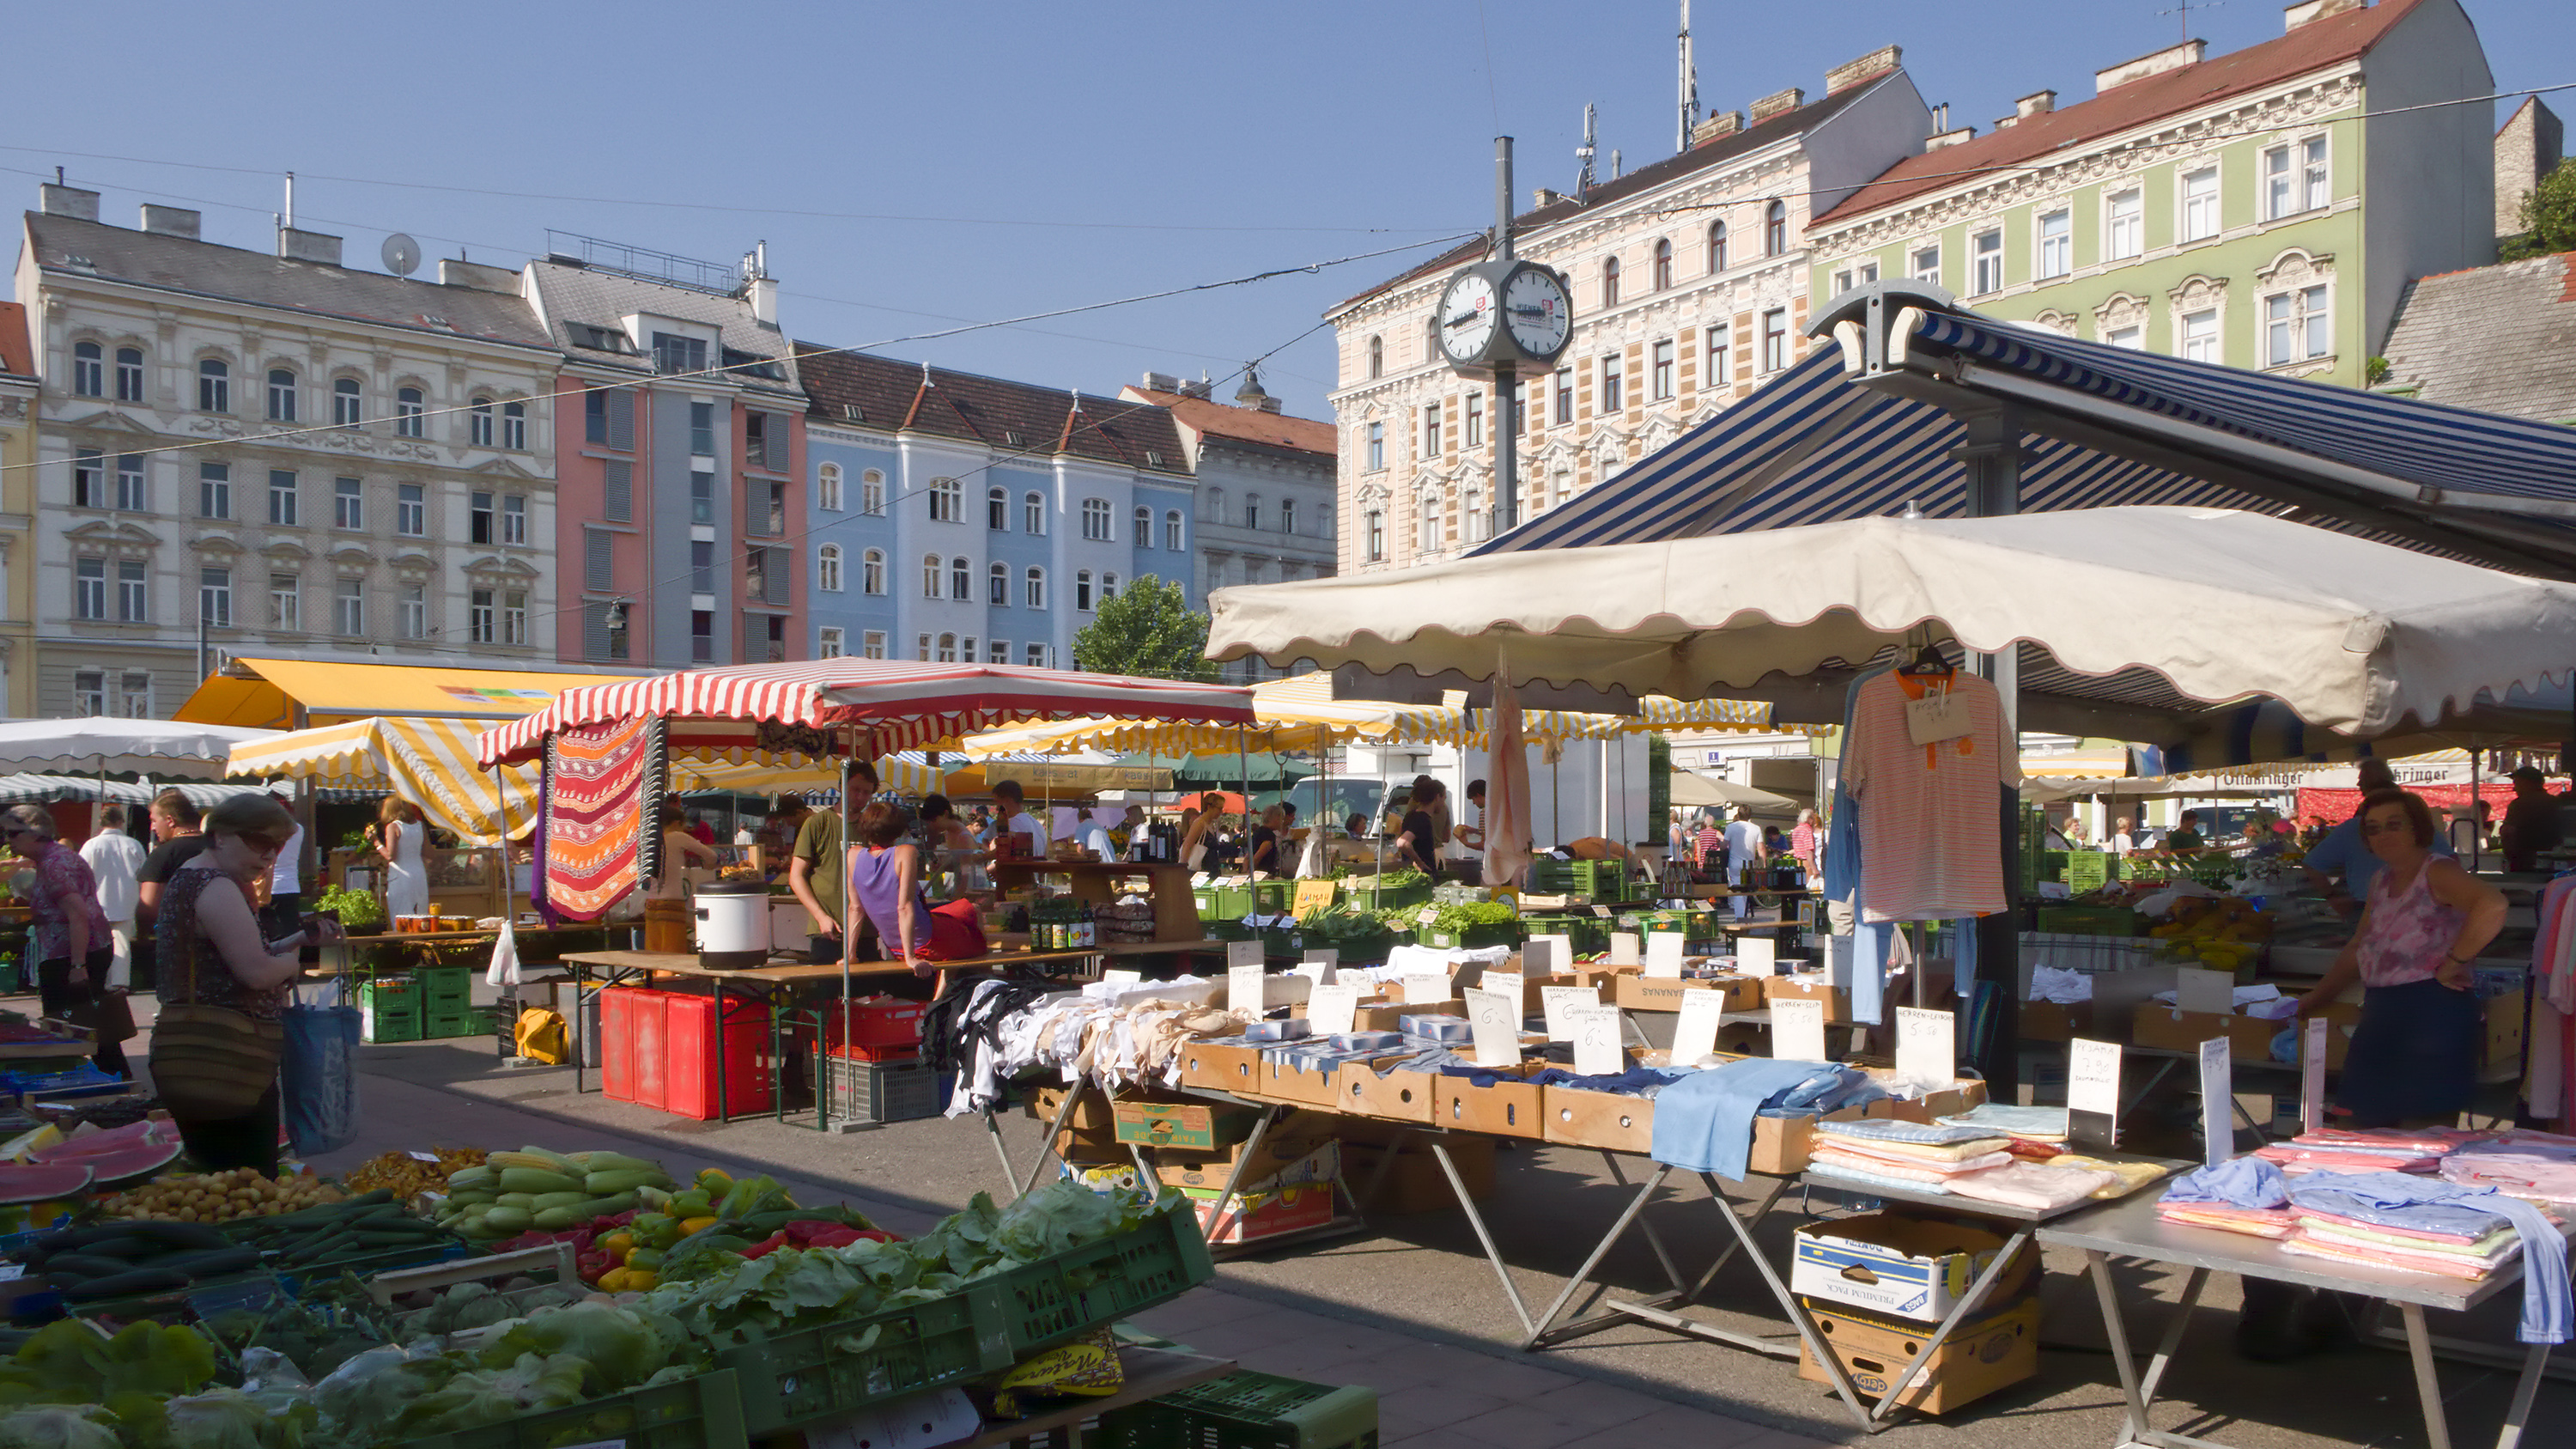 Bild von Marktständen am Karmelitermarkt